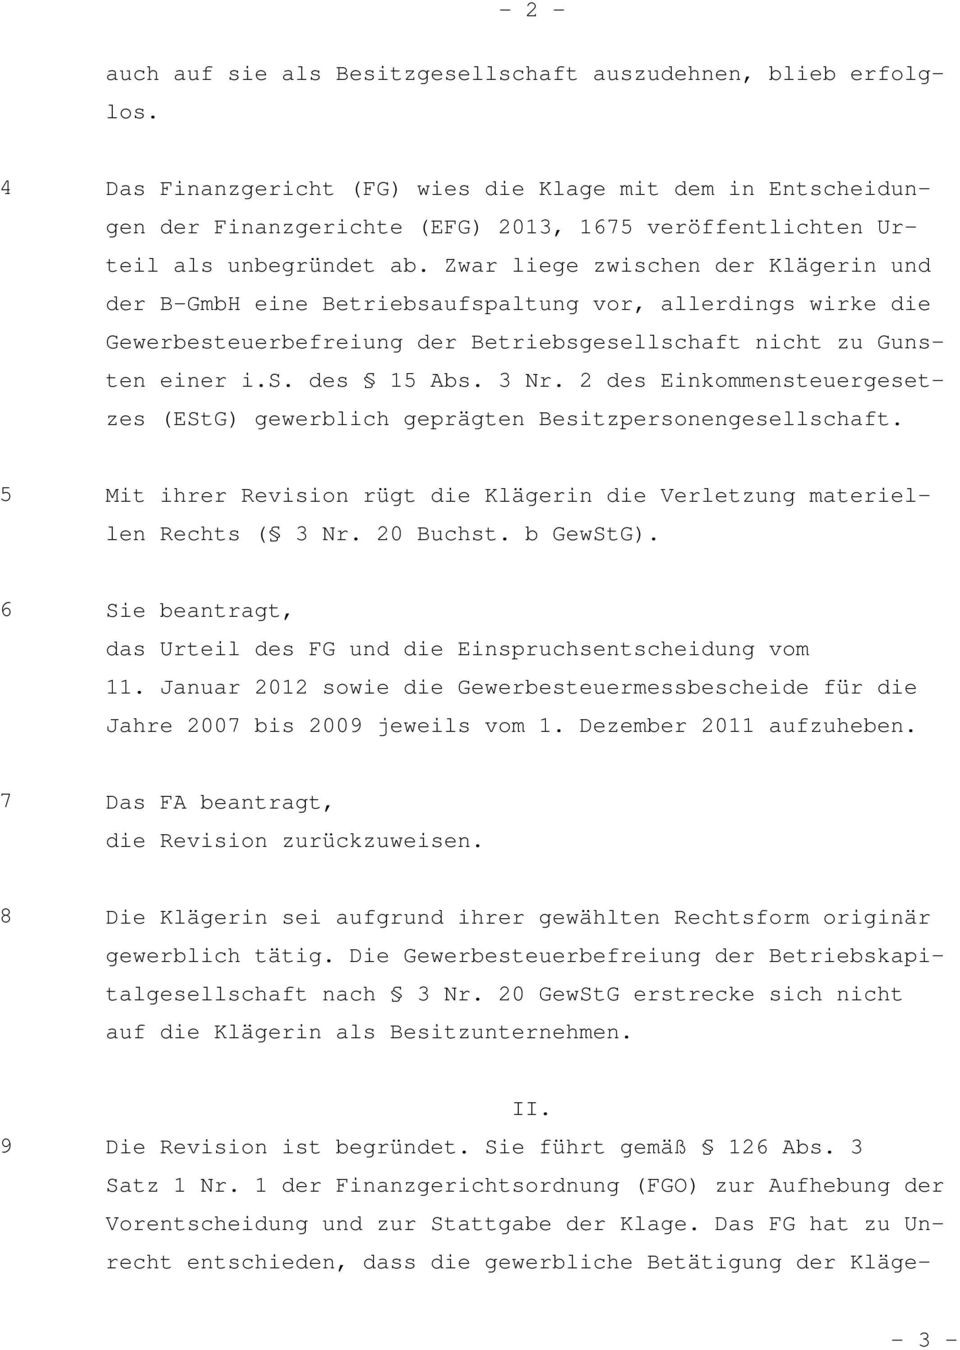 Zwar liege zwischen der Klägerin und der B-GmbH eine Betriebsaufspaltung vor, allerdings wirke die Gewerbesteuerbefreiung der Betriebsgesellschaft nicht zu Gunsten einer i.s. des 15 Abs. 3 Nr.